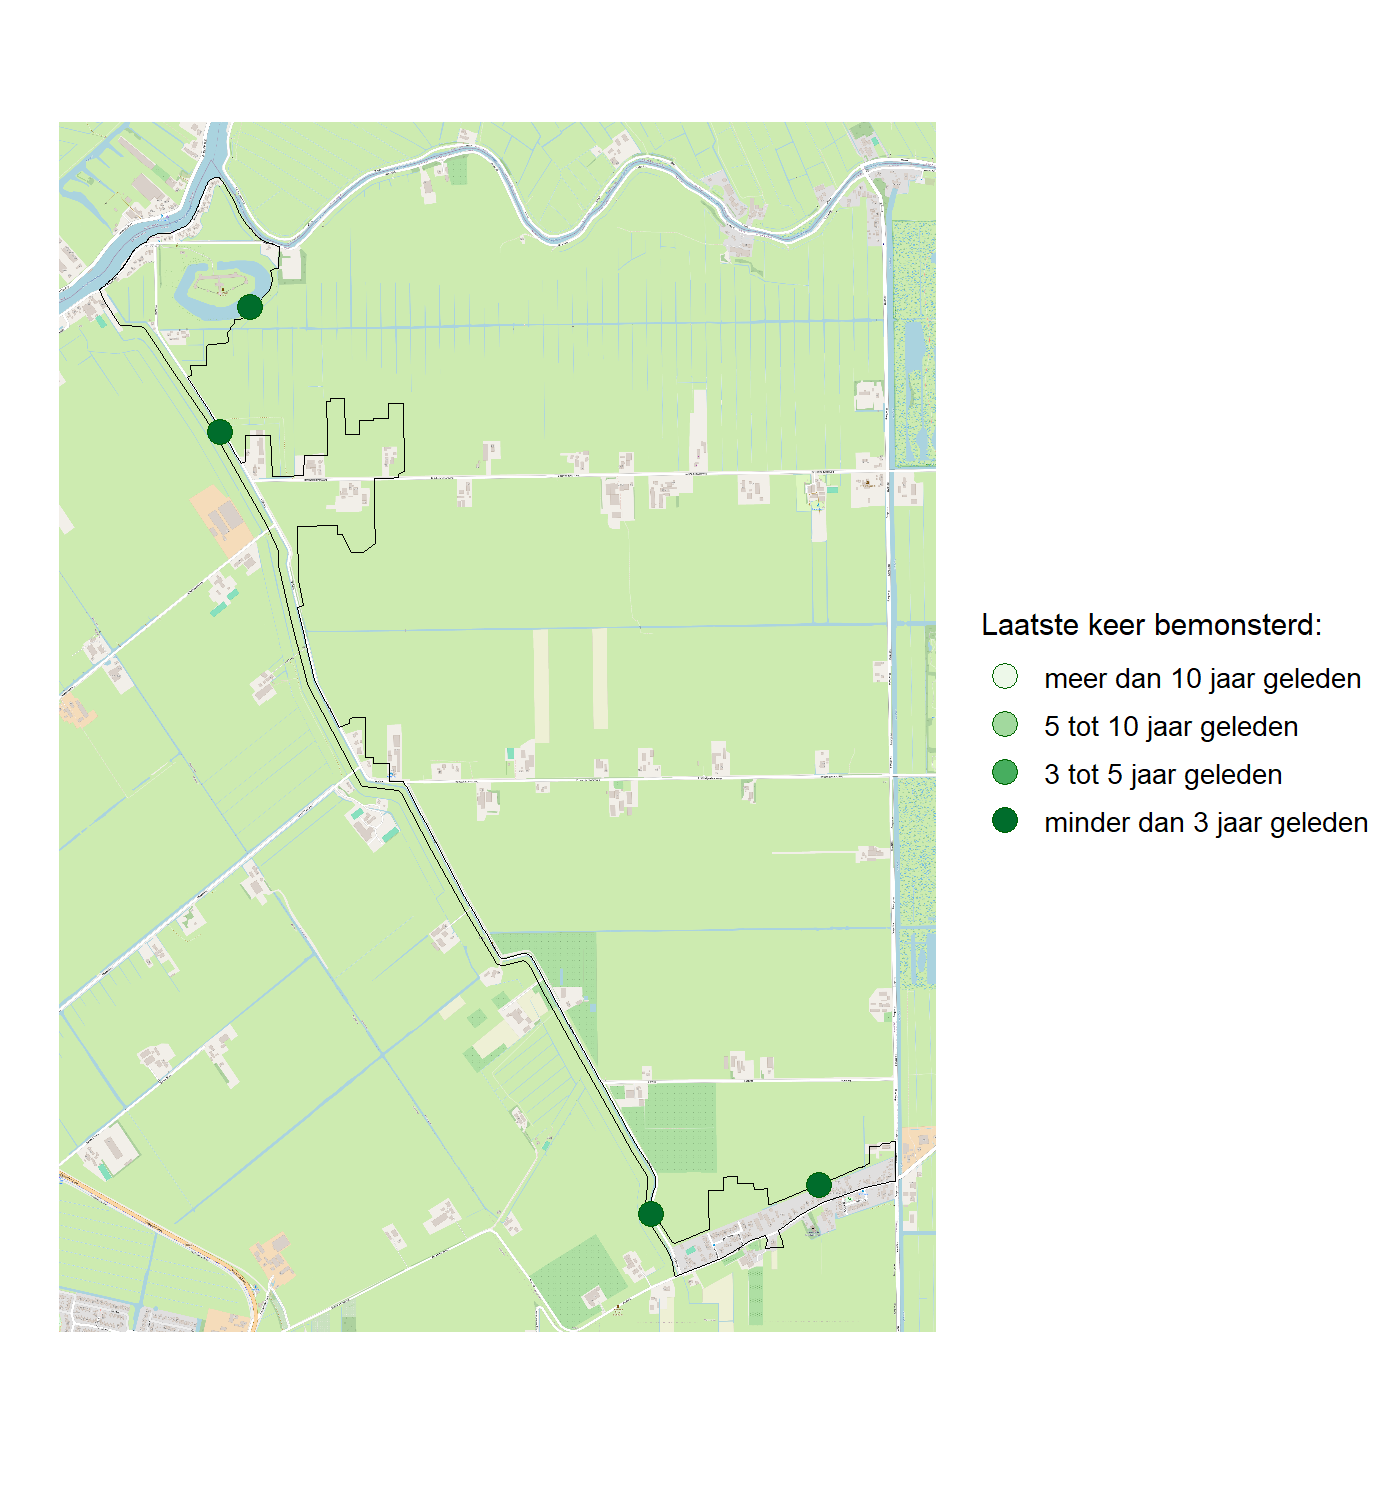 Kaart met meetlocaties waar waterplanten worden gemeten (groene stippen). Het laatste meetjaar waarin een locatie is bemonsterd is weergegeven in verschillende tinten groen.